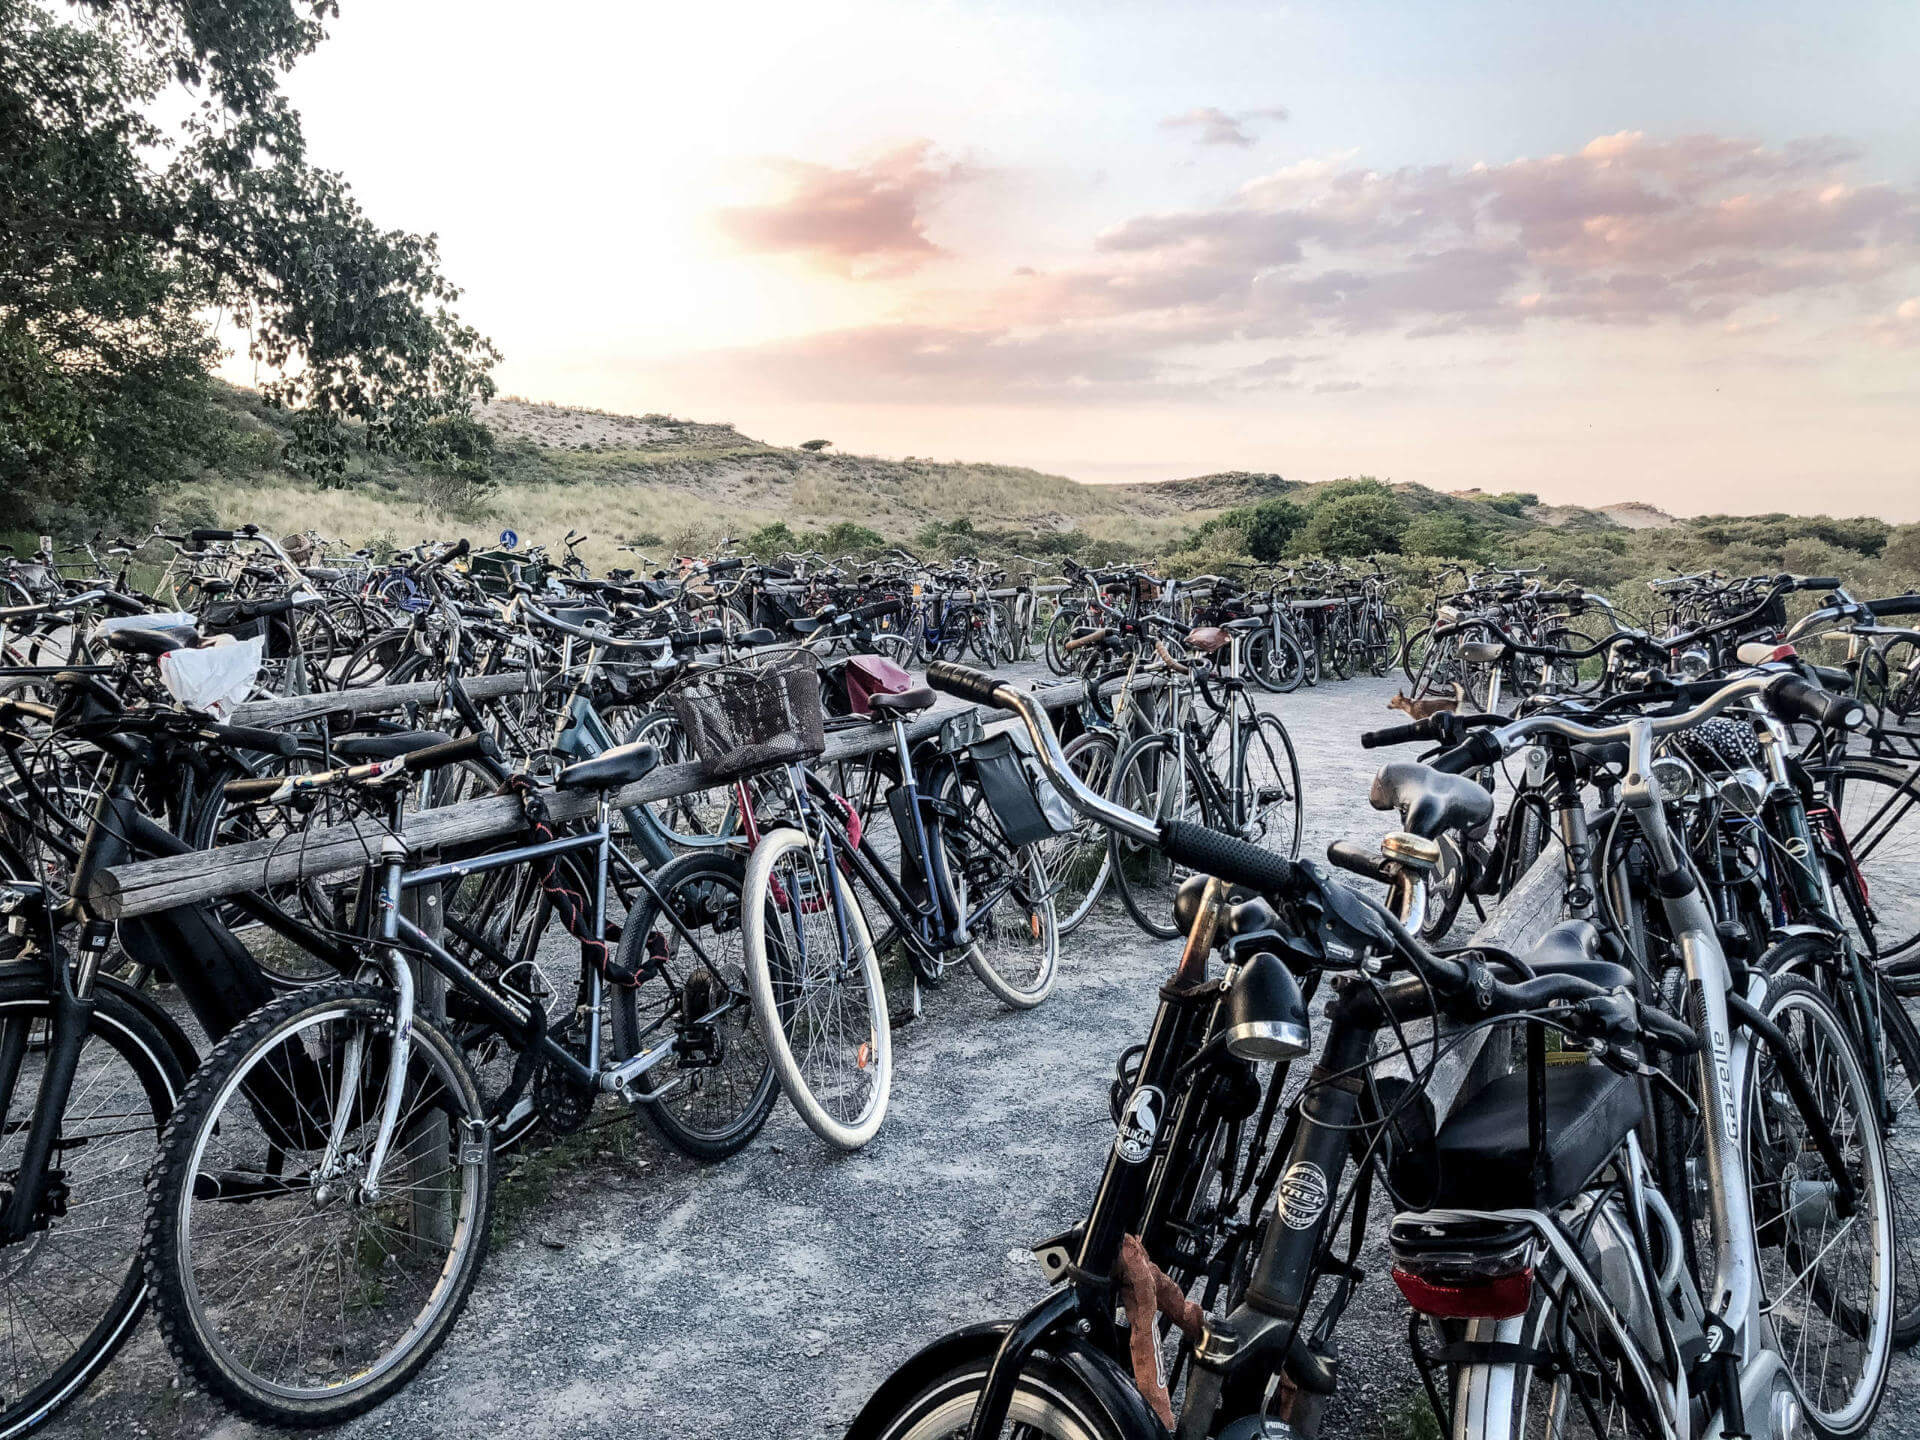 Ein holländischer Parkplatz für Fahrräder mit vielen Rädern, in der Ferne färbt der Sonnenuntergang den Himmel orange